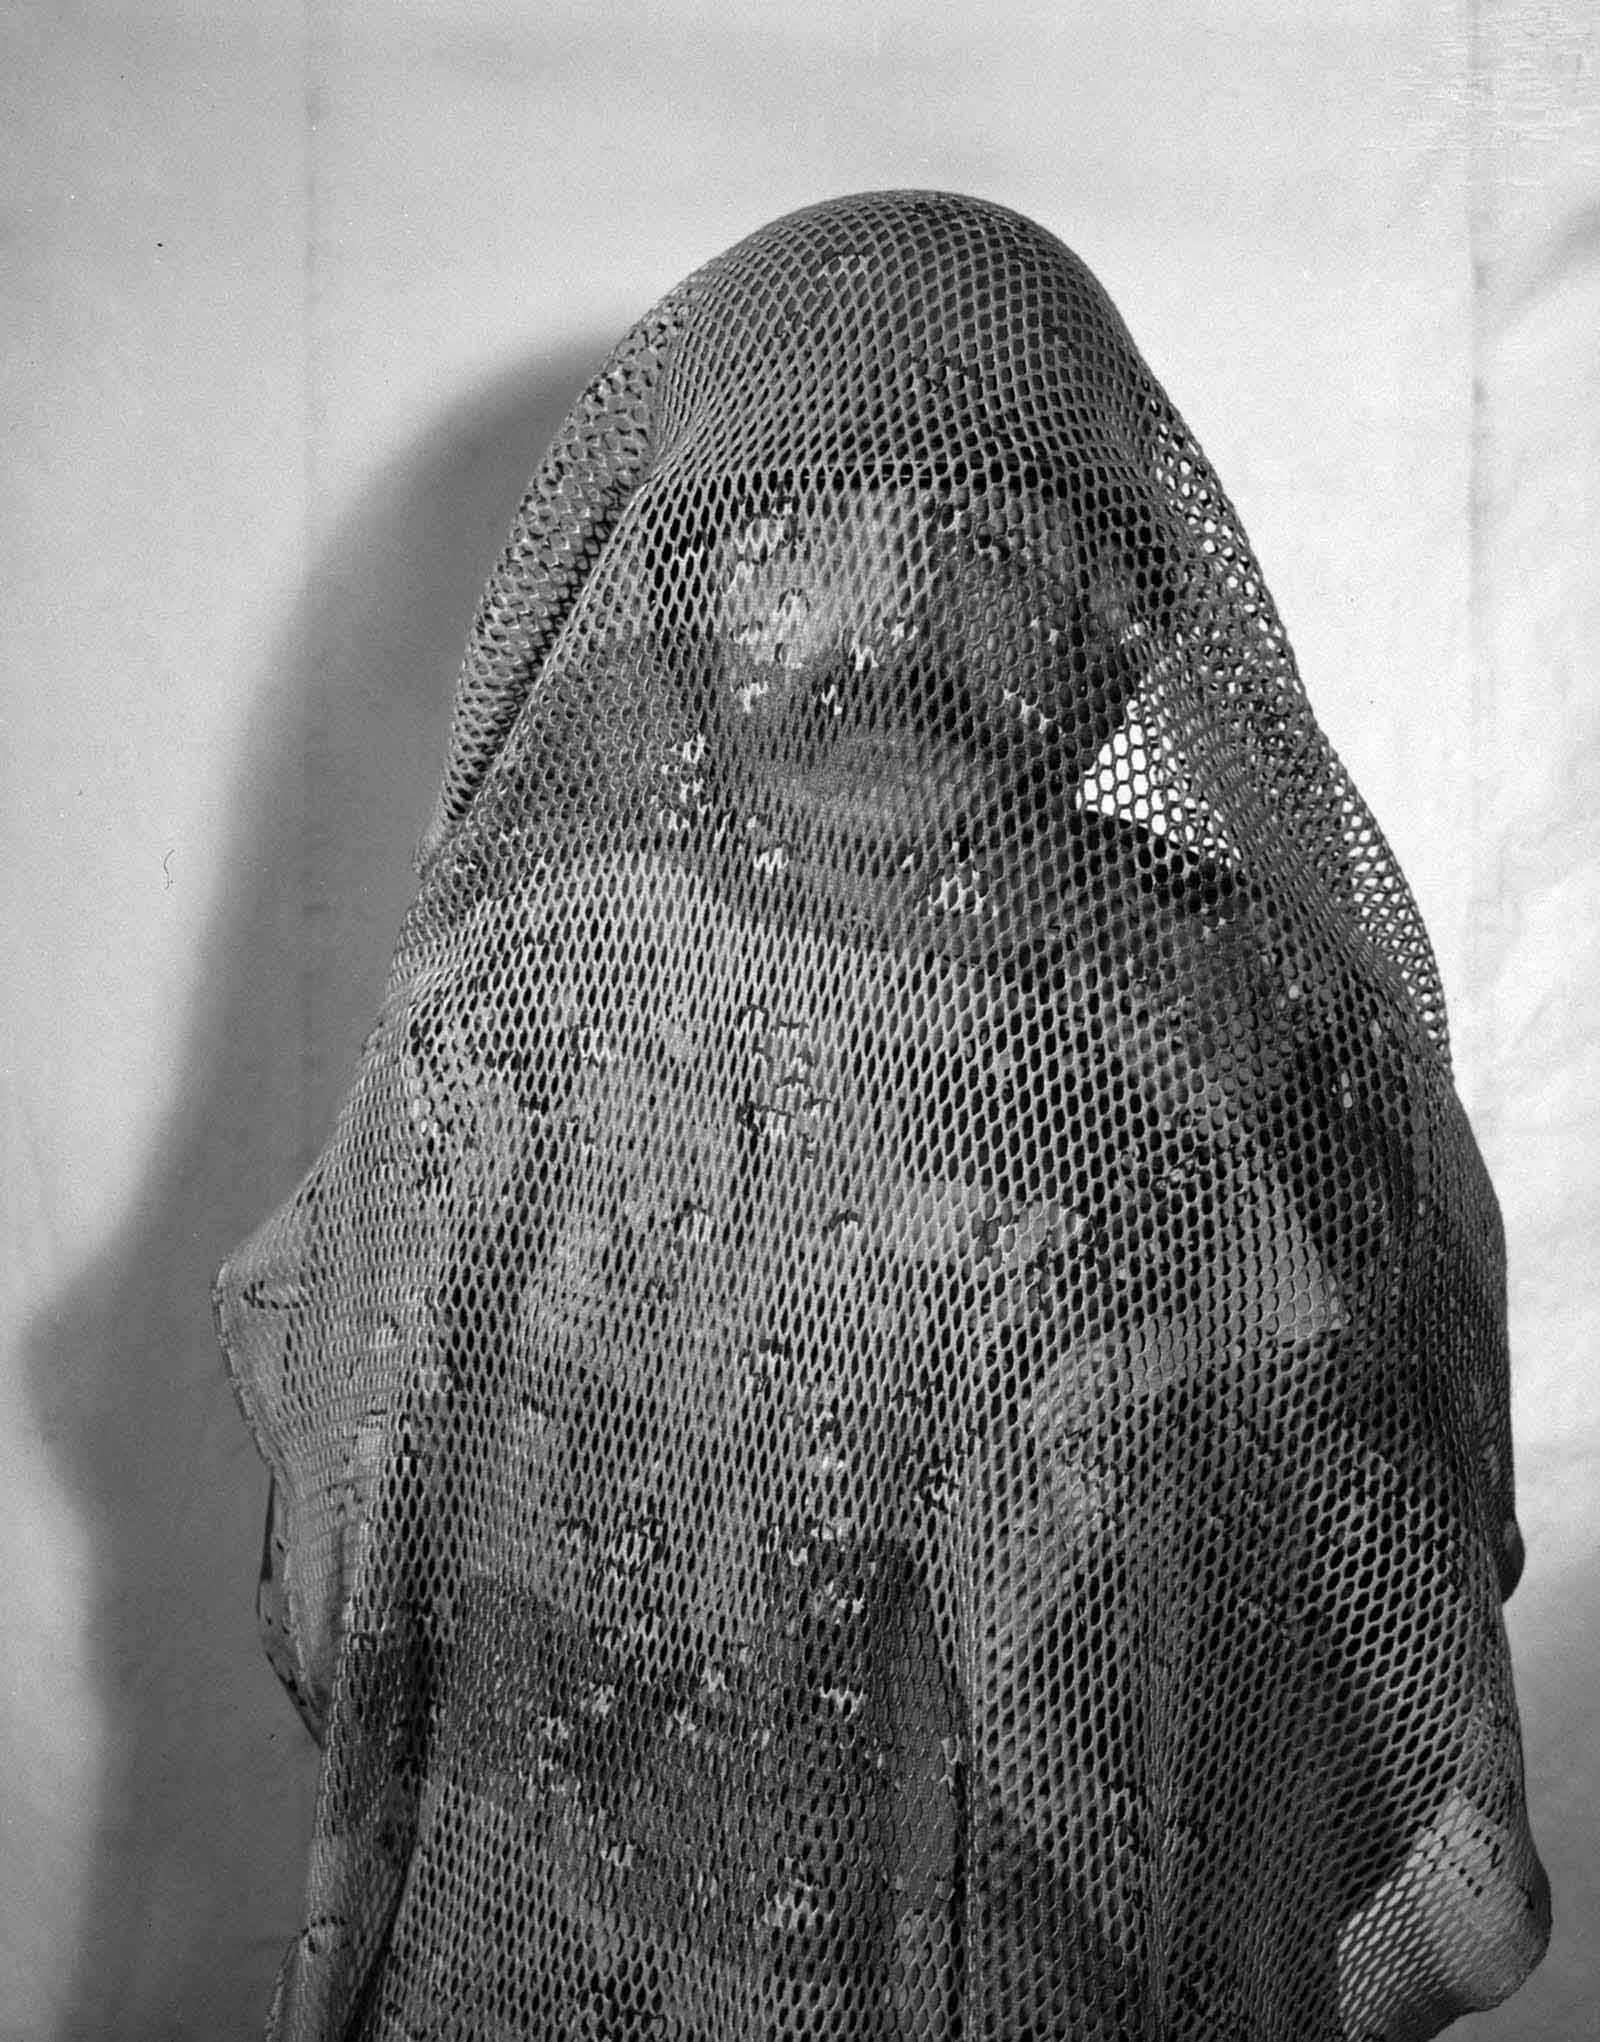 Head netting for desert camouflage, 1973.